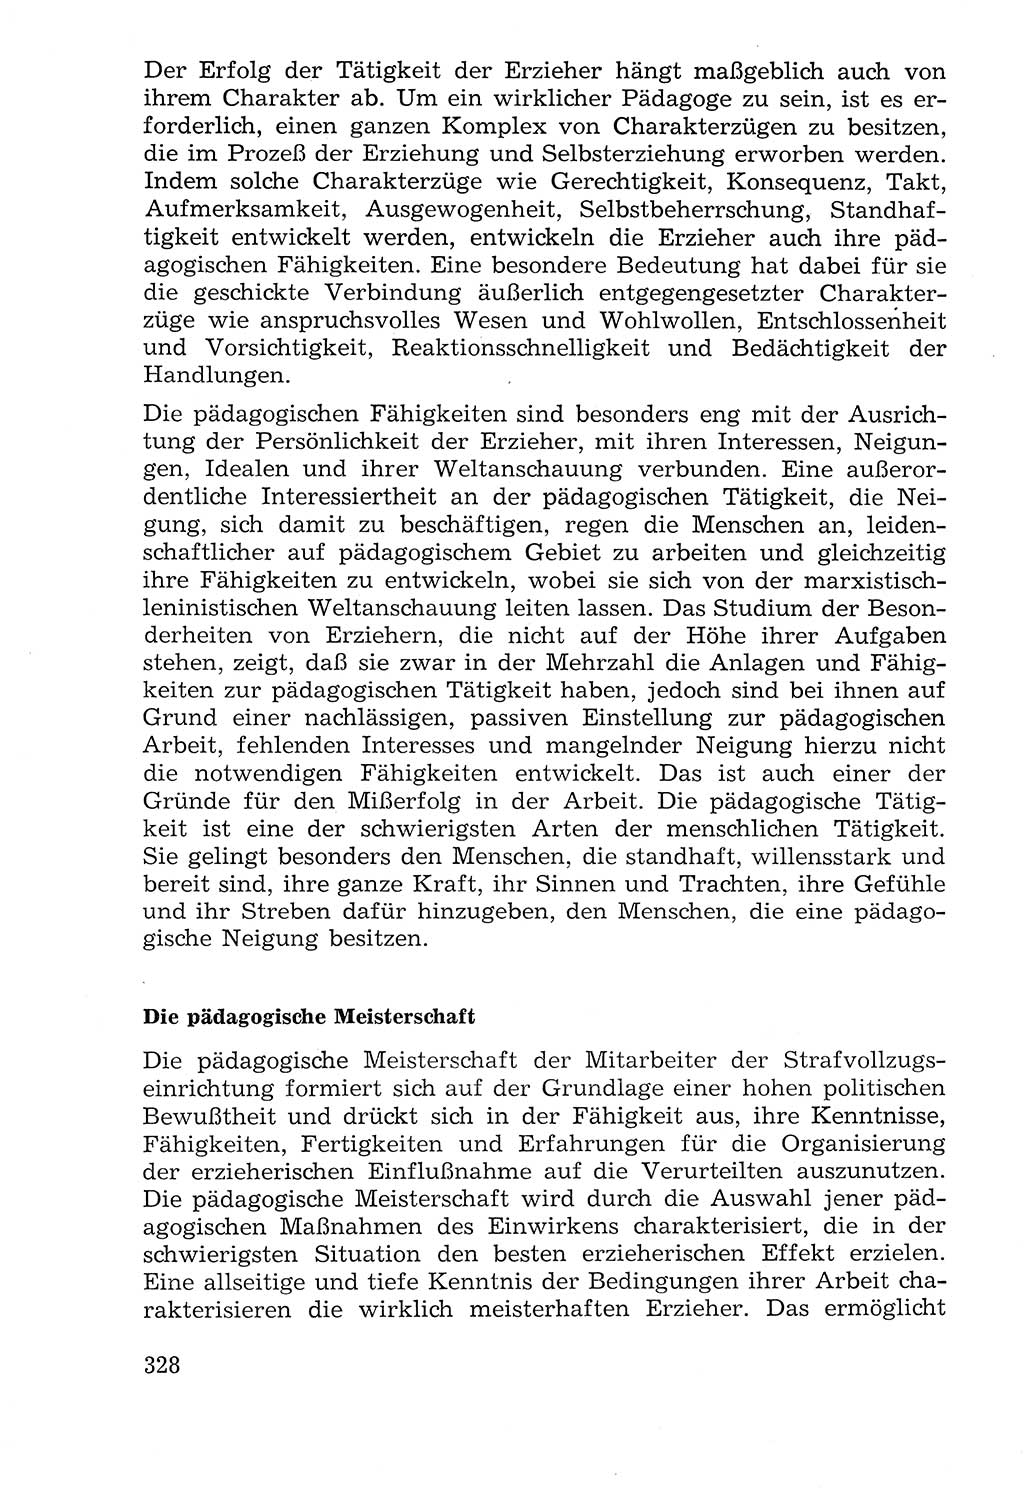 Lehrbuch der Strafvollzugspädagogik [Deutsche Demokratische Republik (DDR)] 1969, Seite 328 (Lb. SV-Pd. DDR 1969, S. 328)